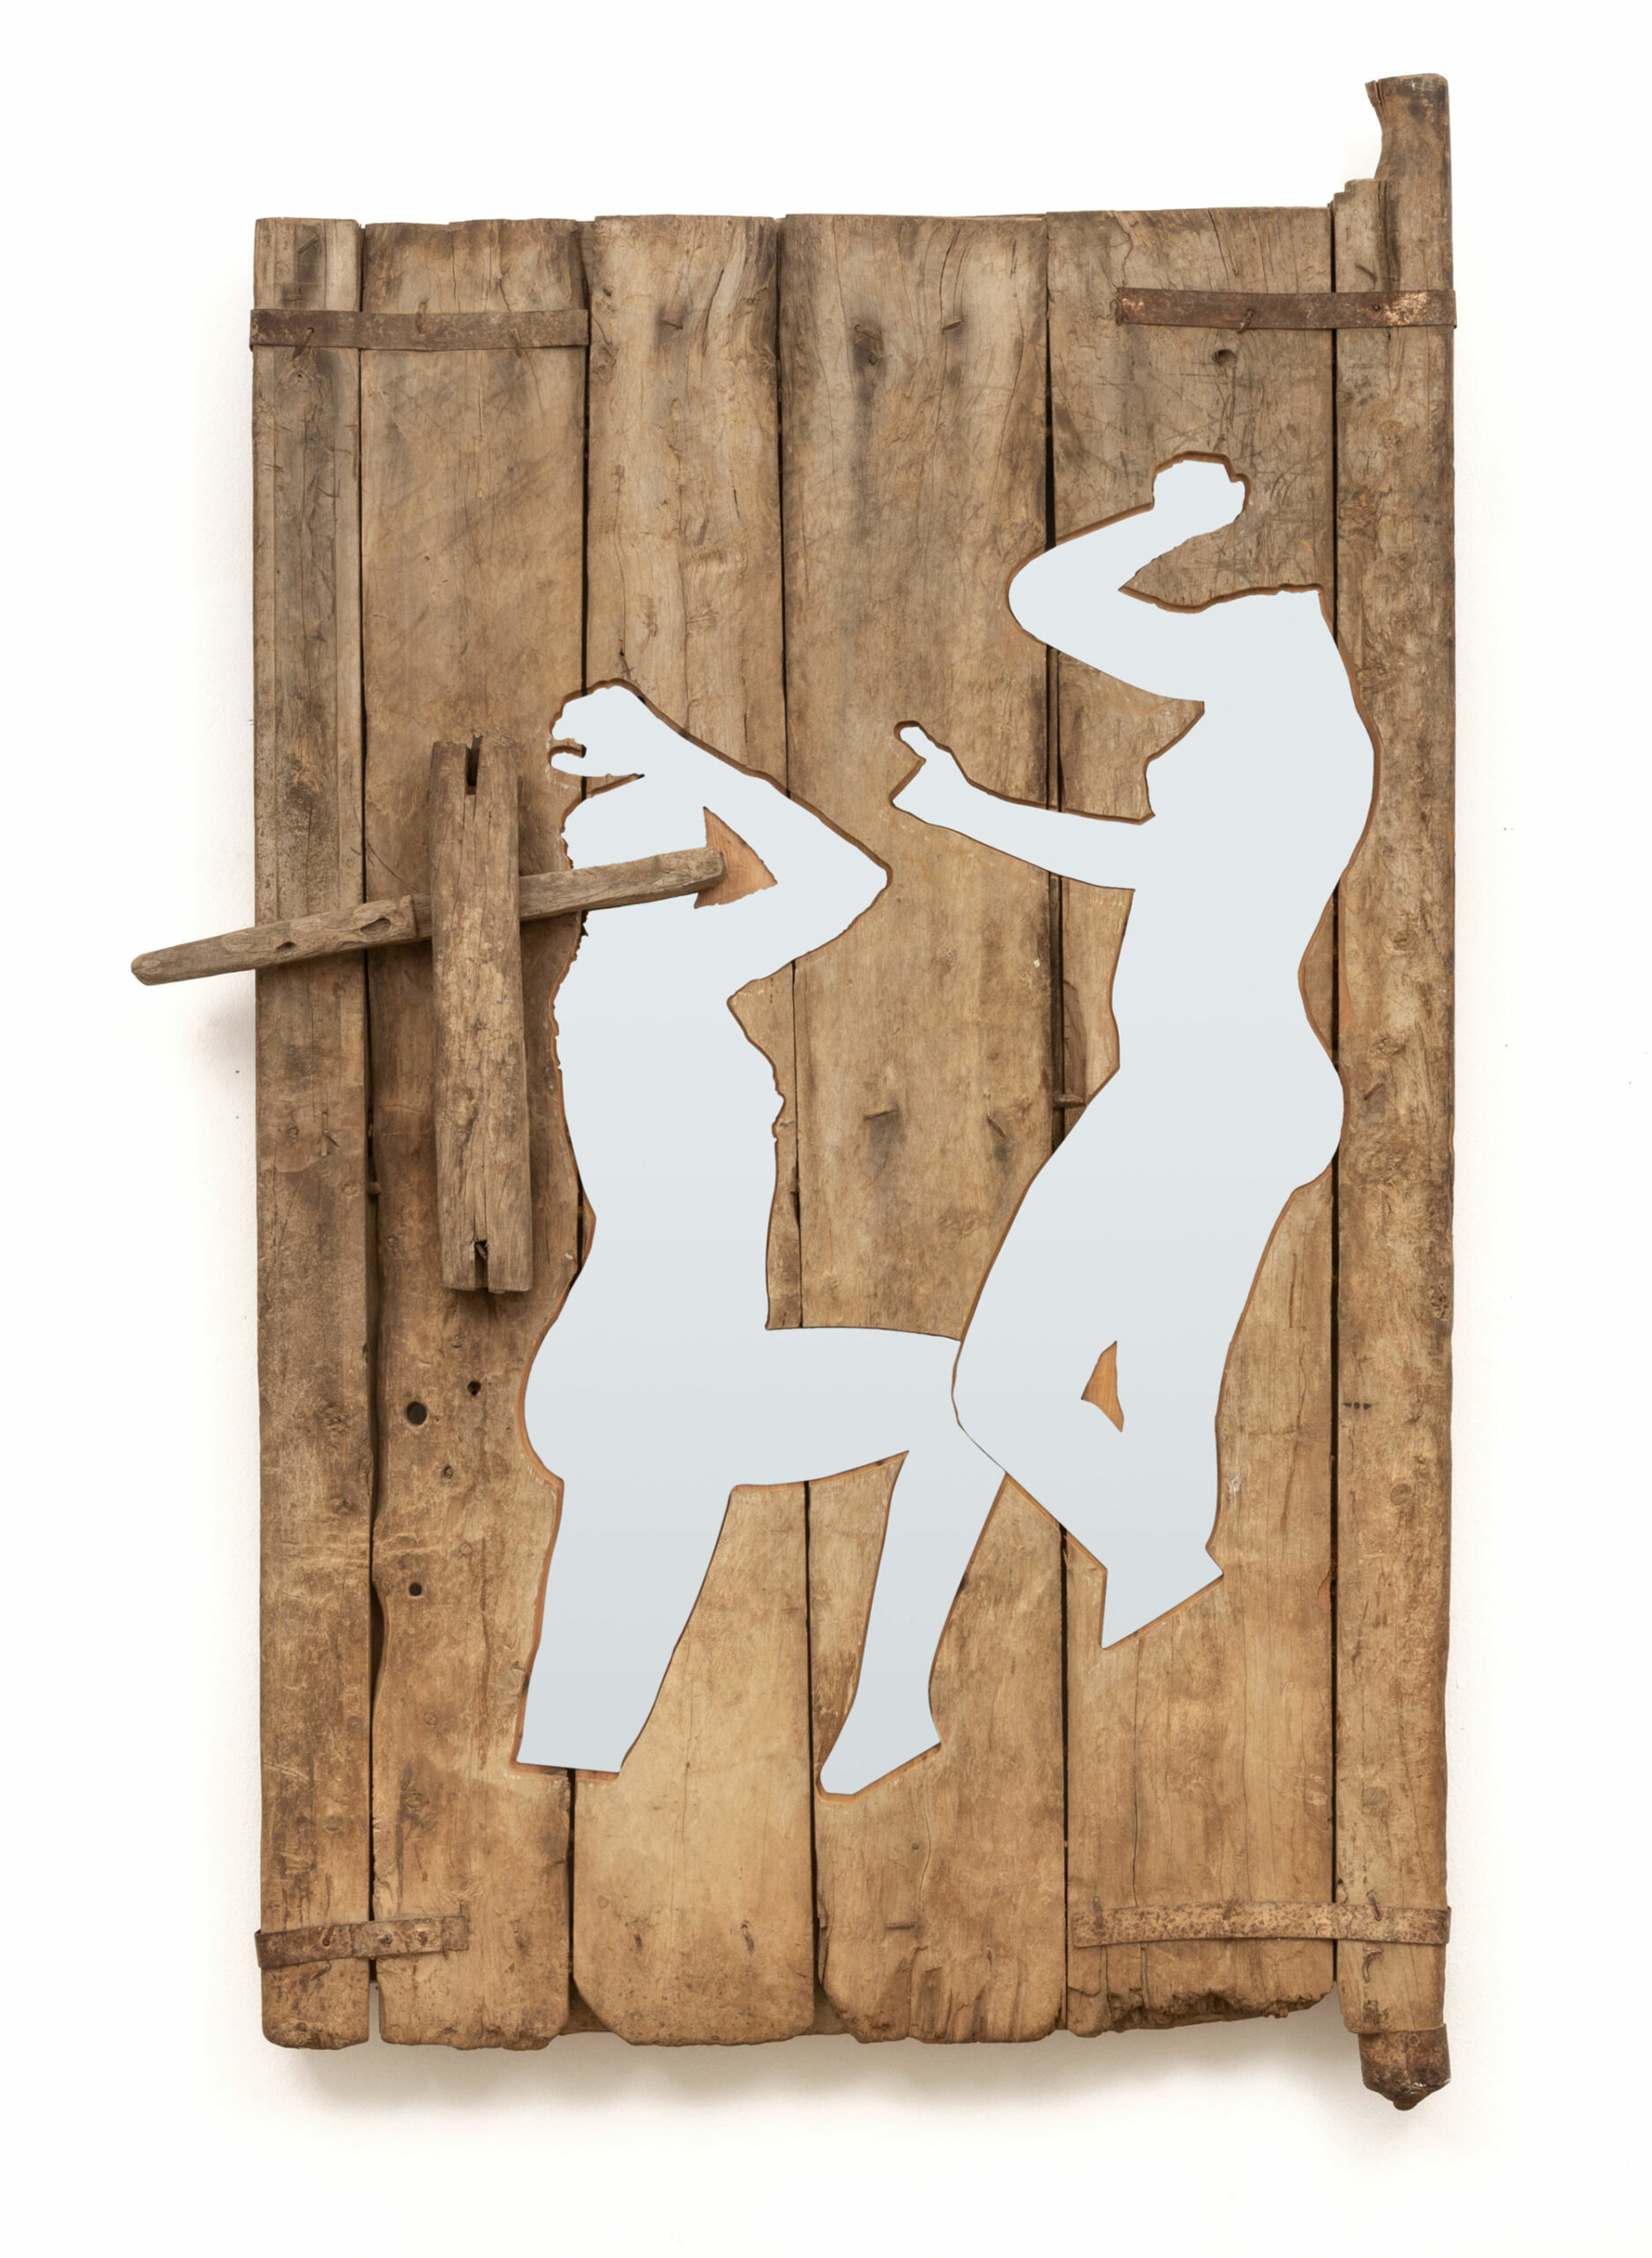 PORTE, OBJET DE FRONTIÈRE 1, 2021
Portes traditionnelles en bois et découpe alucobond miroir
170 x 124 x 11 cm